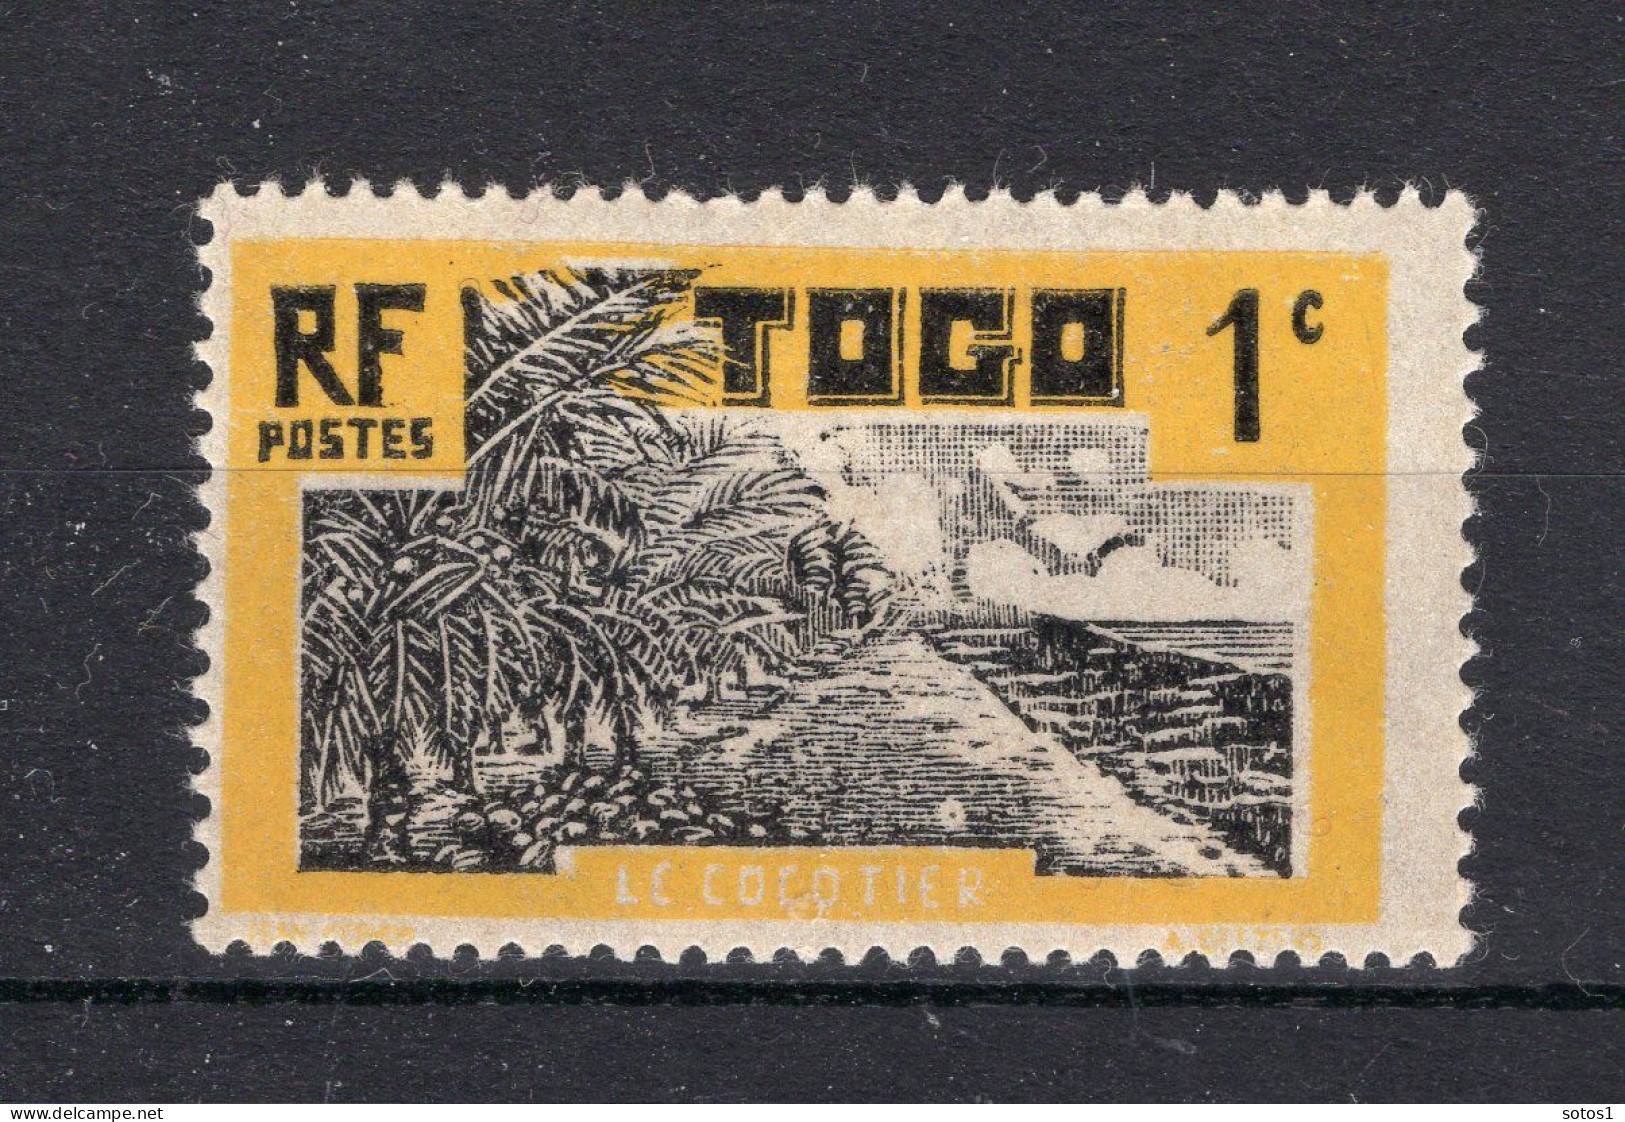 TOGO Yt. 124 MNH 1924 - Ungebraucht